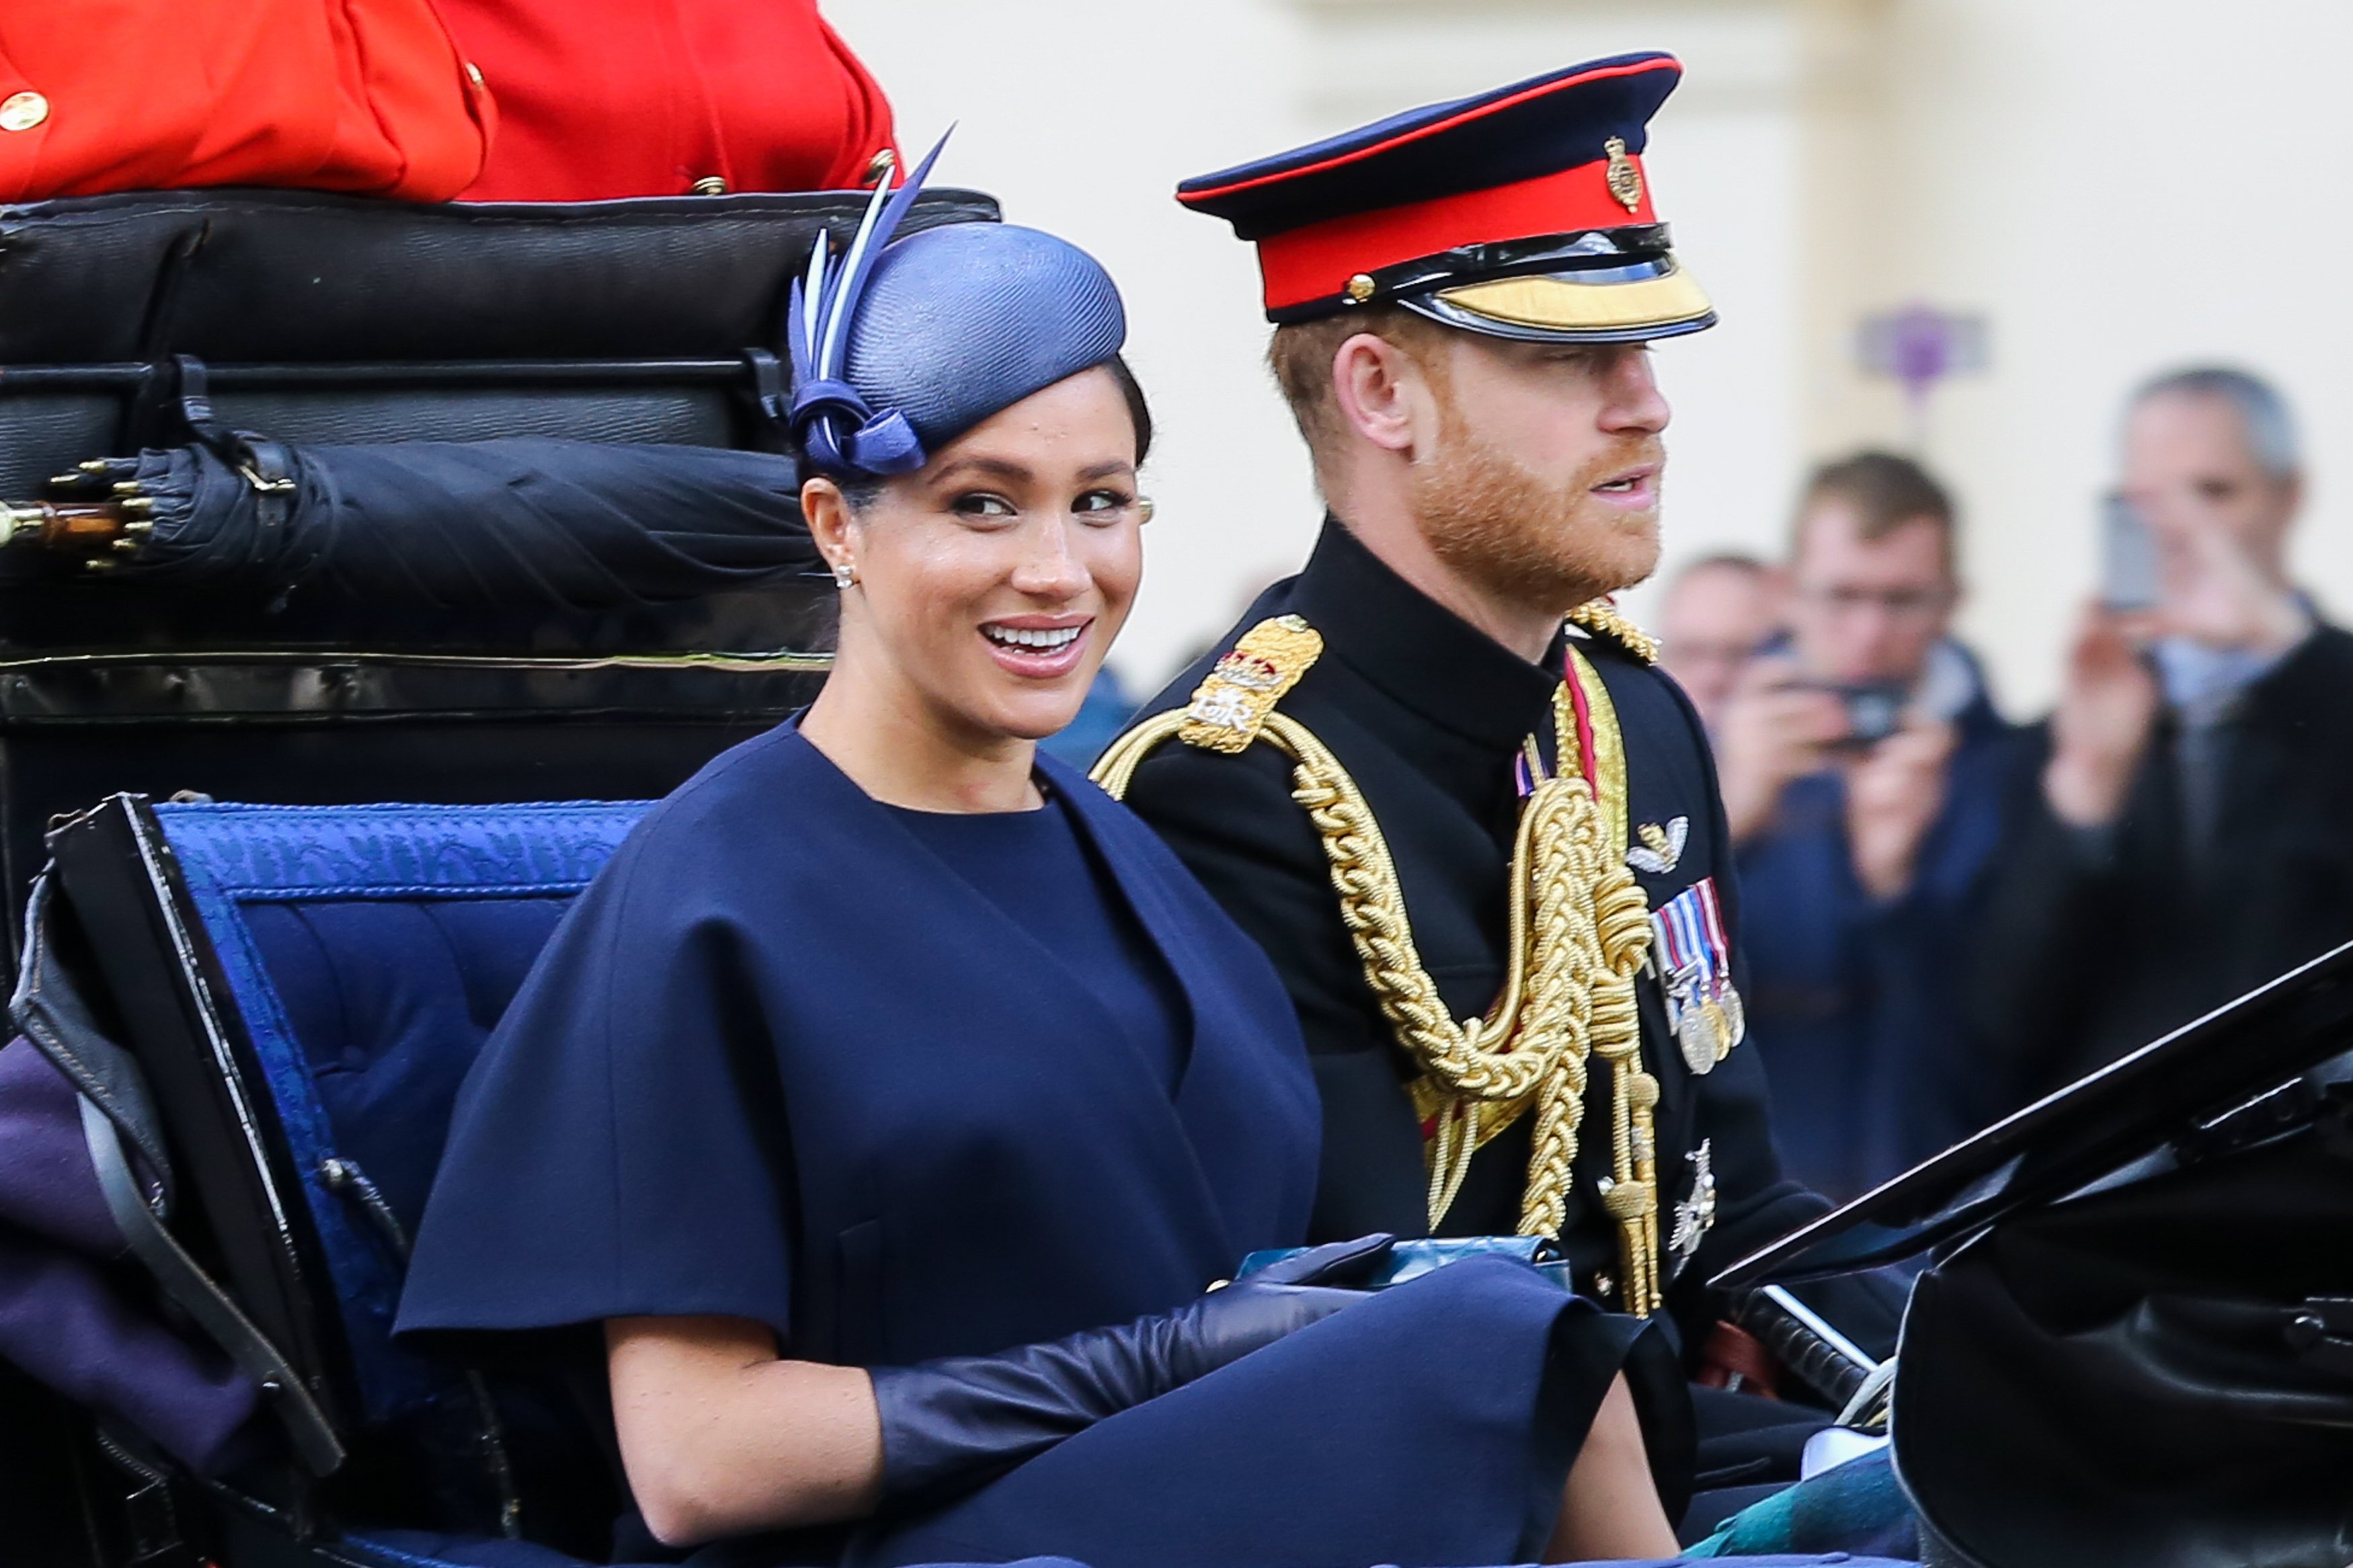 Meghan, duchesse de Sussex, et le prince Harry sont vus dans un carrosse en route pour Buckingham Palace après avoir assisté à la cérémonie du Trooping the Color, qui marque le 93e anniversaire de la reine Elizabeth II, le plus ancien monarque britannique. | Source : Getty Images